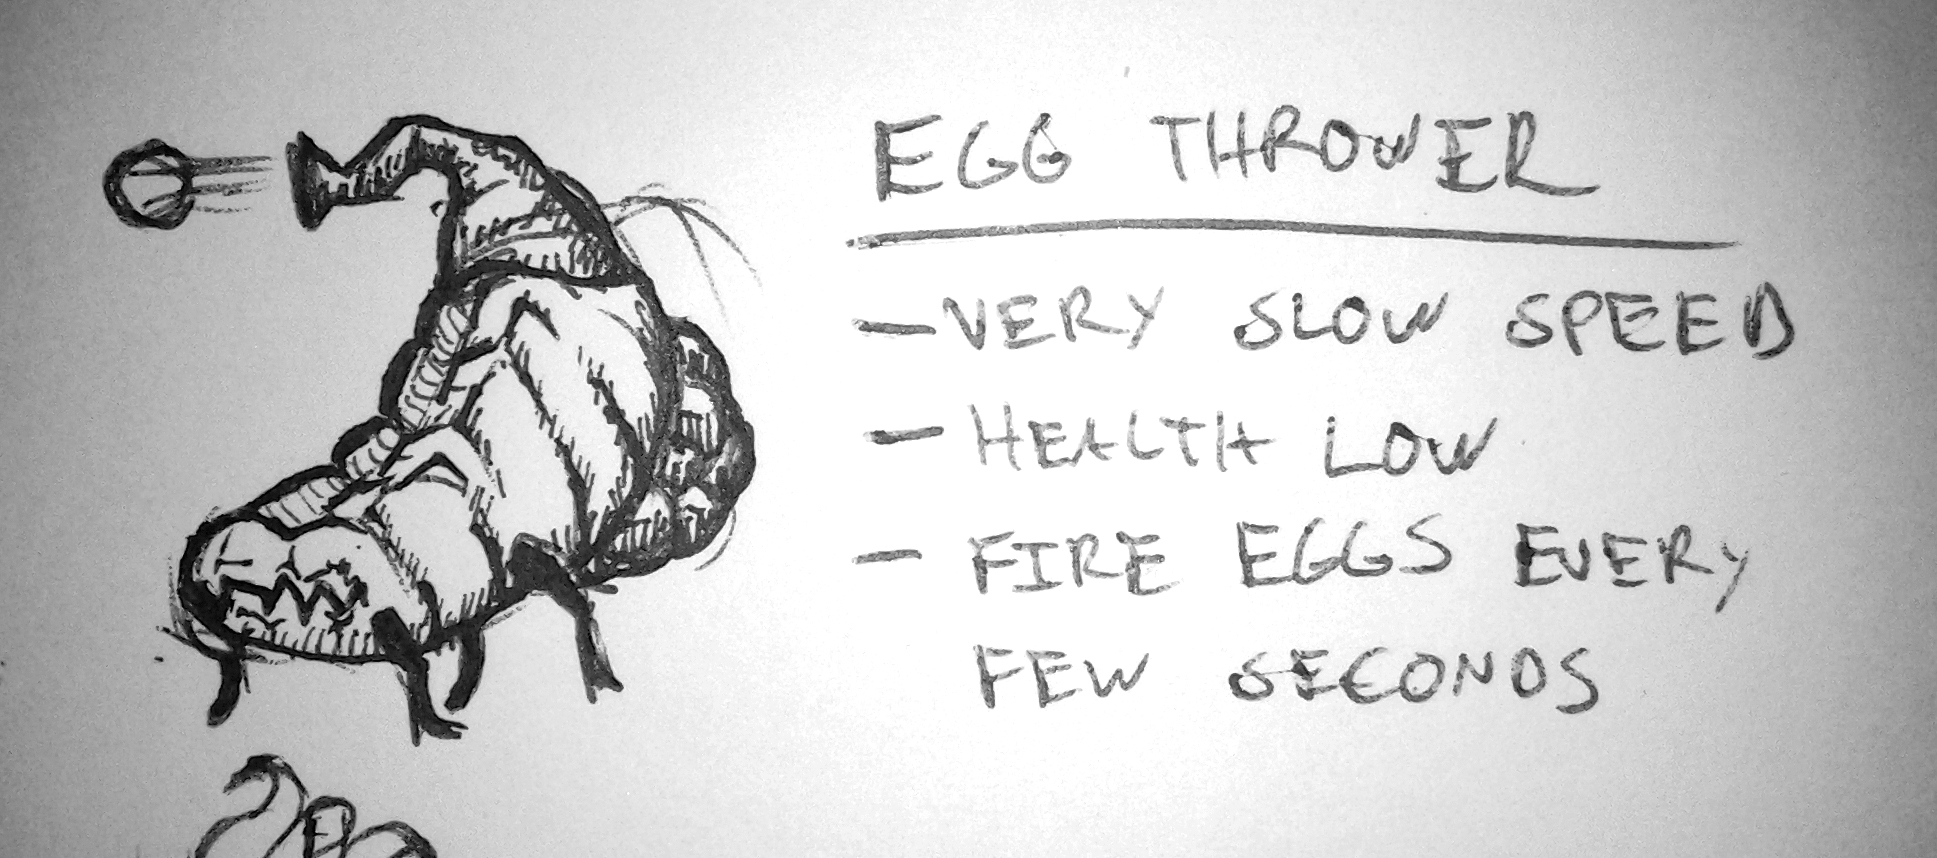 Egg Thrower